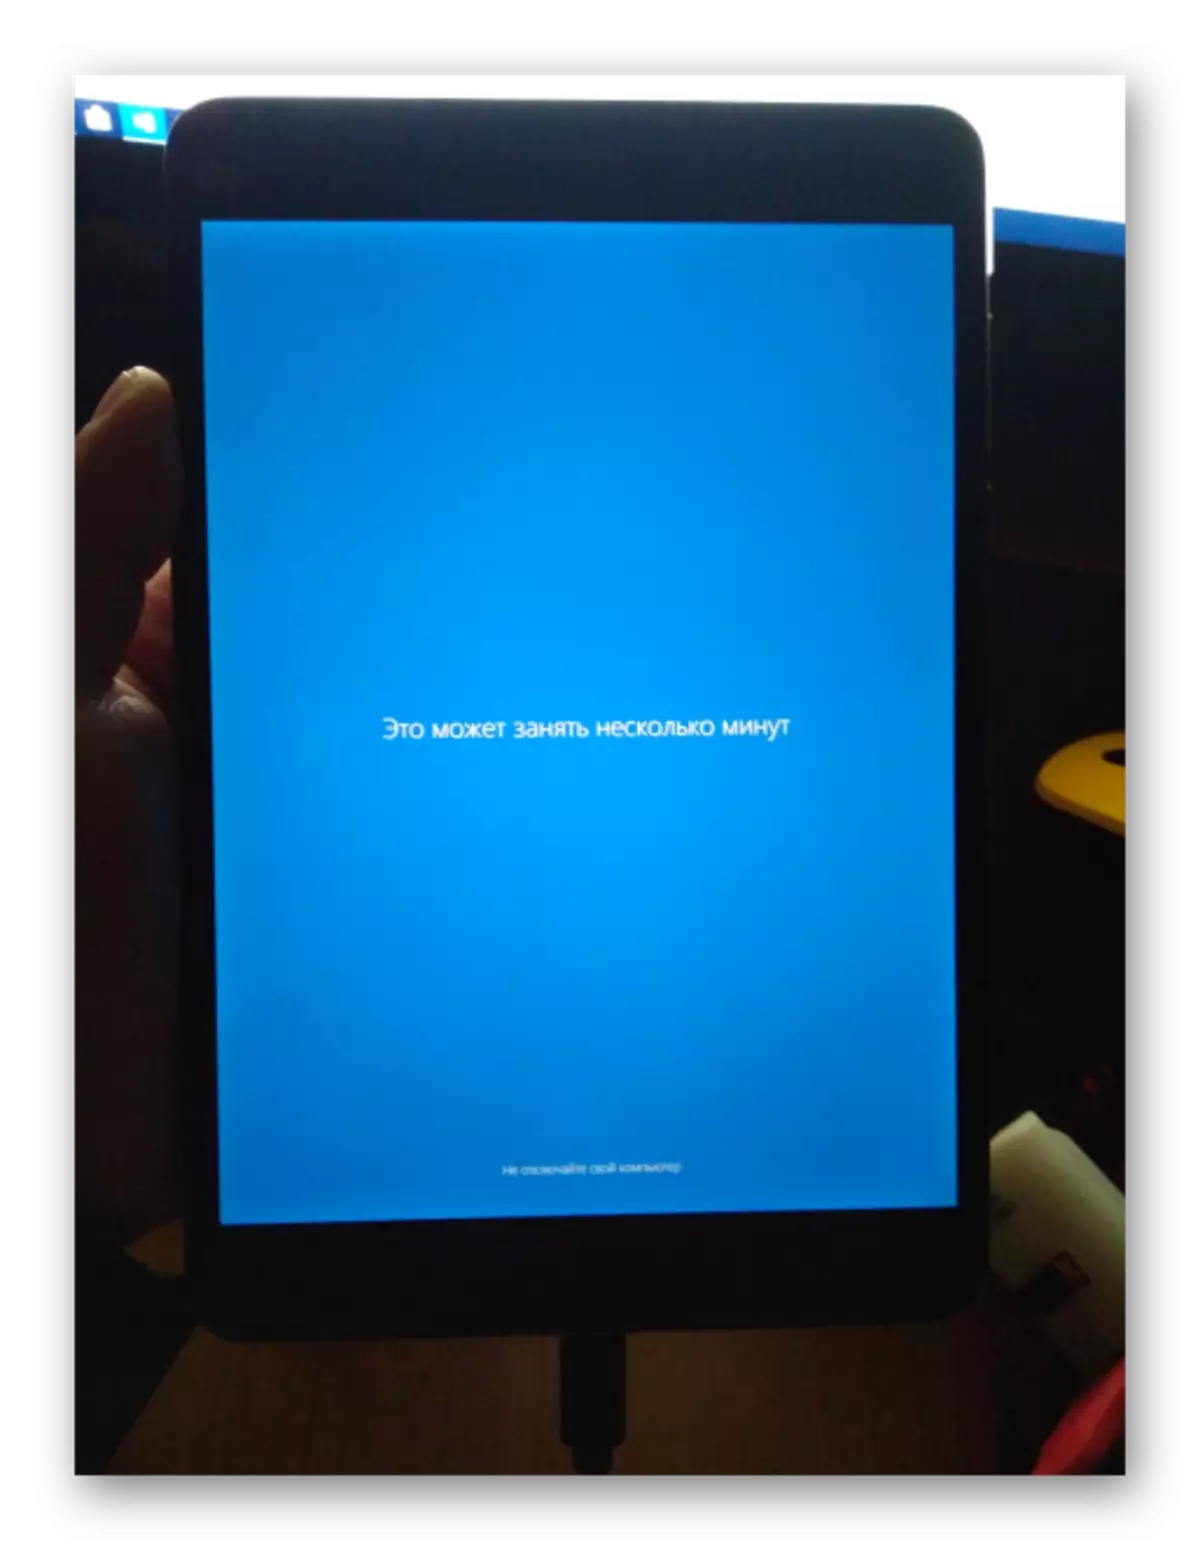 Xiaomi Mipad 2 nṣiṣẹ Windows 10 lẹhin fifi sori ẹrọ